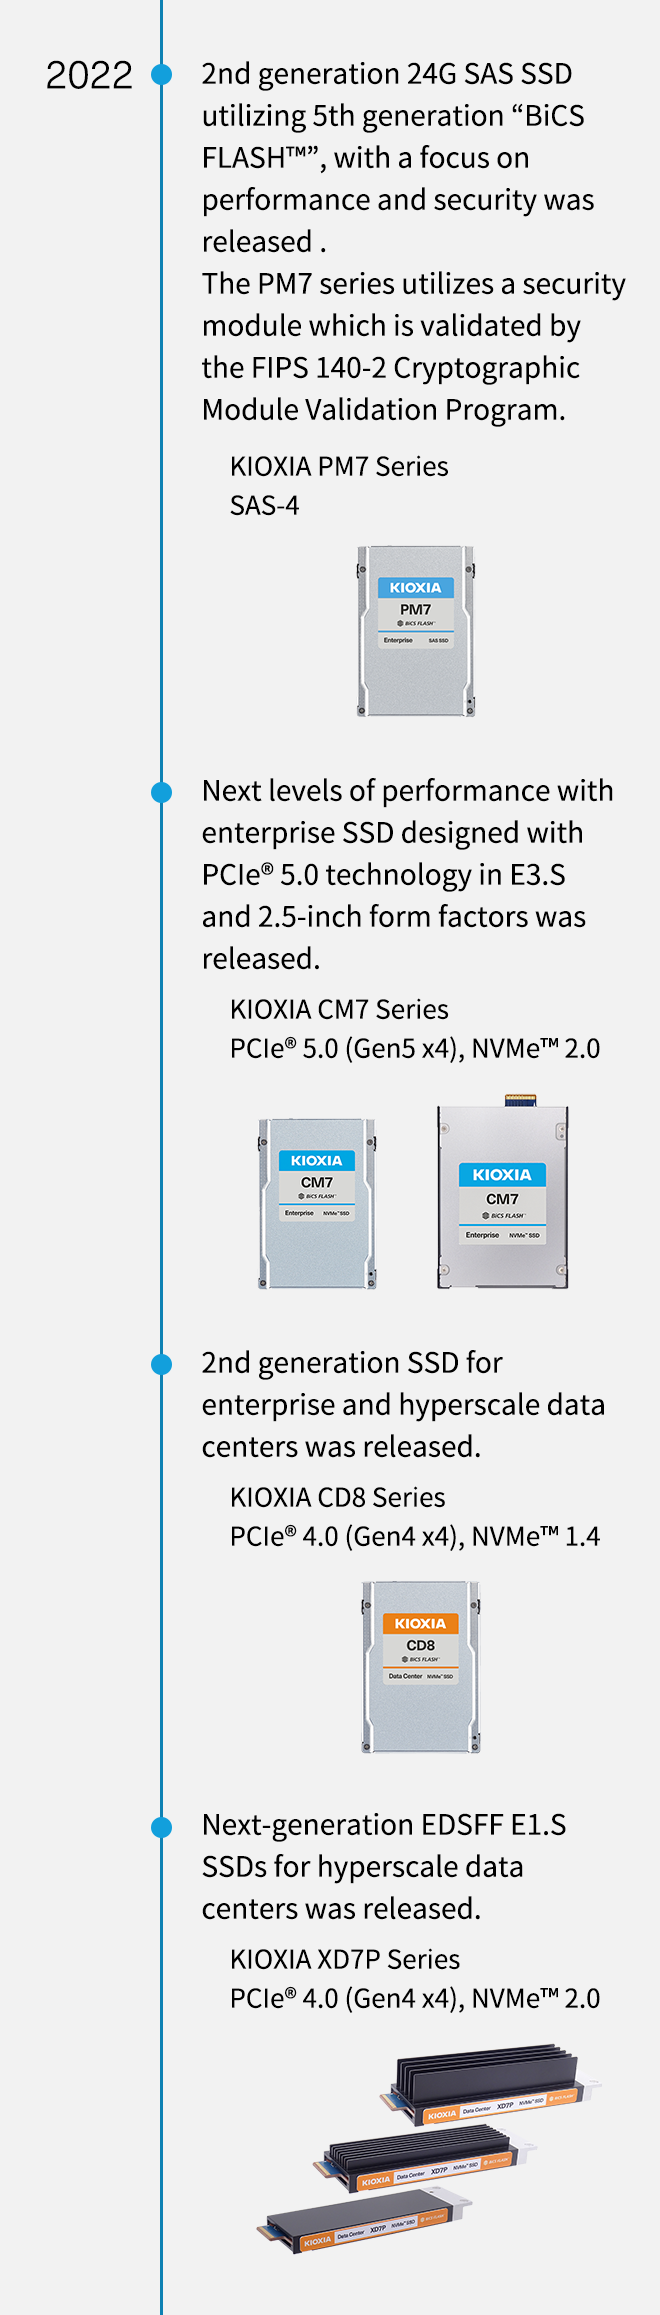 2022. Performans ve güvenlik odaklı, 5. nesil “BiCS FLASH™” kullanan 2. nesil 24G SAS SSD piyasaya sürüldü. PM7 serisi, FIPS 140-2 Şifreleme Modülü Doğrulama Programı tarafından doğrulanan bir güvenlik modülü kullanır. KIOXIA PM7 Serisi SAS-4. E3.S'de PCIe® 5.0 teknolojisi ve 2,5 inç form faktörleriyle tasarlanan kurumsal SSD ile yeni performans seviyeleri piyasaya sürüldü. KIOXIA CM7 Serisi PCIe® 5.0 (Gen5 x4), NVMe™ 2.0. Kurumsal ve hiper ölçekli veri merkezleri için 2. nesil SSD piyasaya sürüldü. KIOXIA CD8 Serisi PCIe® 4.0 (Gen4 x4), NVMe™ 1.4. Hiper ölçekli veri merkezleri için yeni nesil EDSFF E1.S SSD'ler piyasaya sürüldü. KIOXIA XD7P Serisi PCIe® 4.0 (Gen4 x4), NVMe™ 2.0